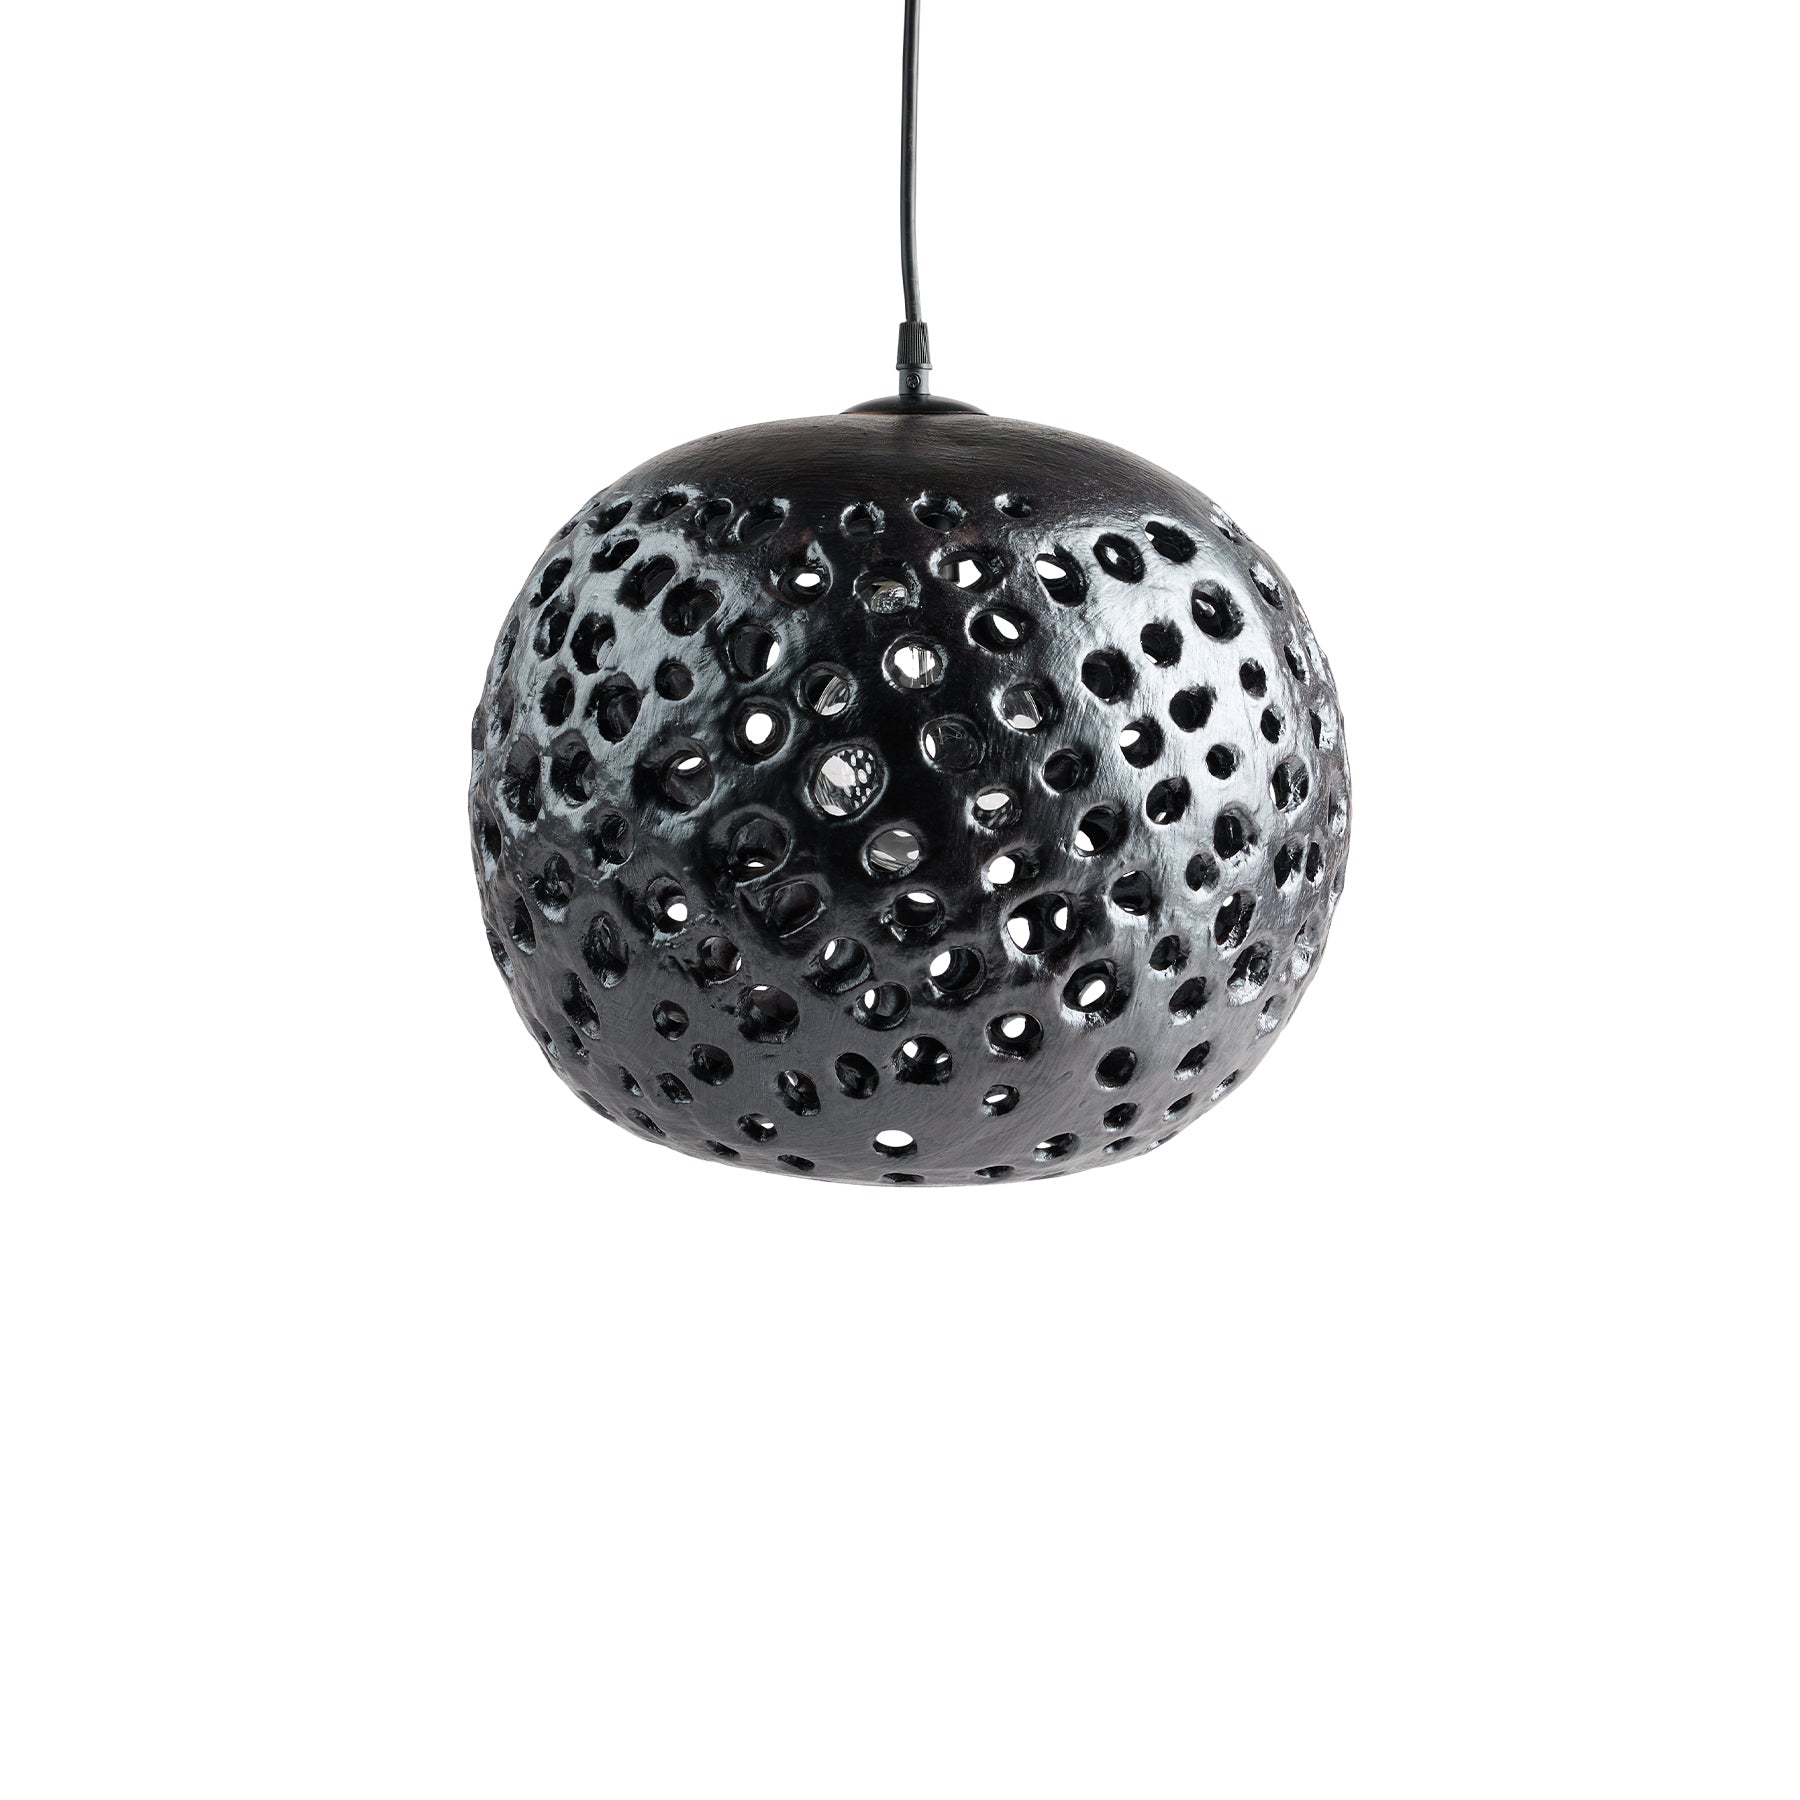 14" Ceramic Hanging Lantern in Black Zoom Image 1